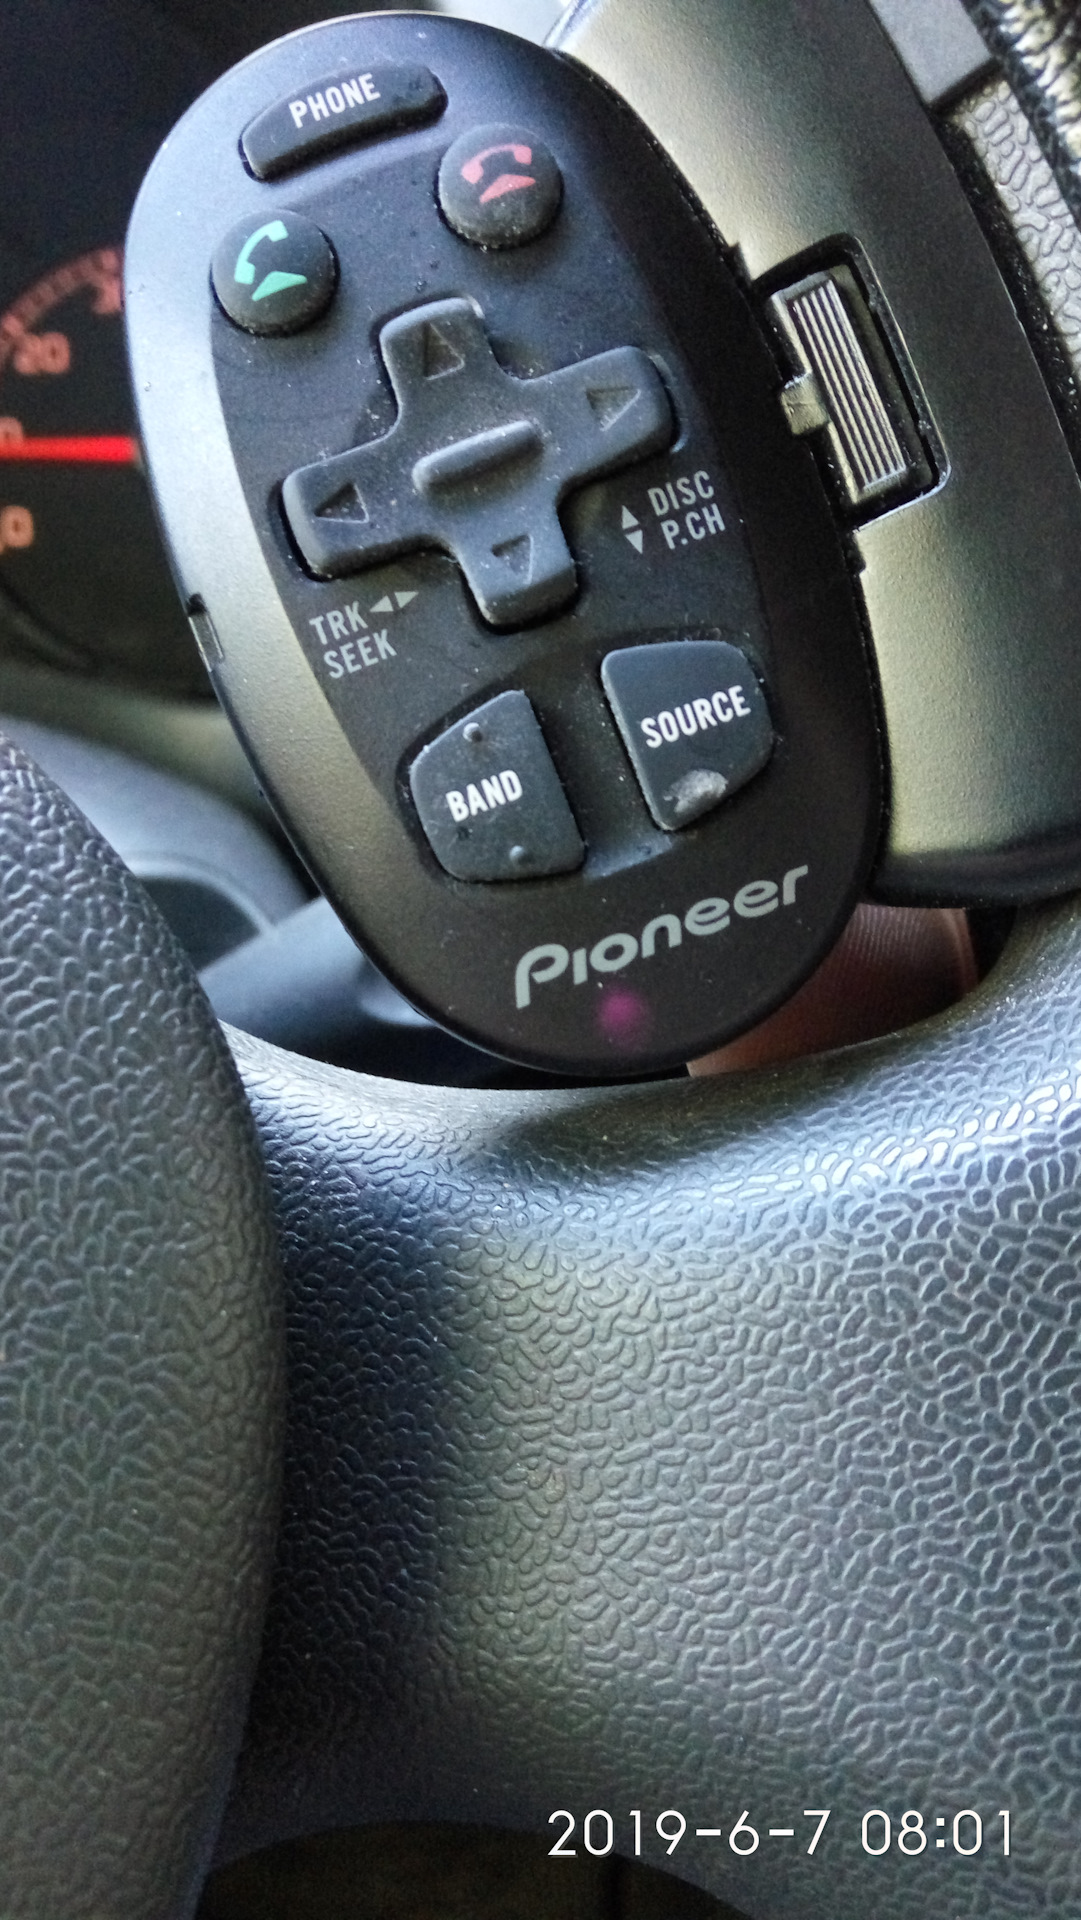 Приставка не видит пульт. Пульт магнитолы Ford Focus 2. Пульт магнитолы Sony. Пульт магнитолы ОМС. Пульт для магнитолы андроид на руль Пежо 206.